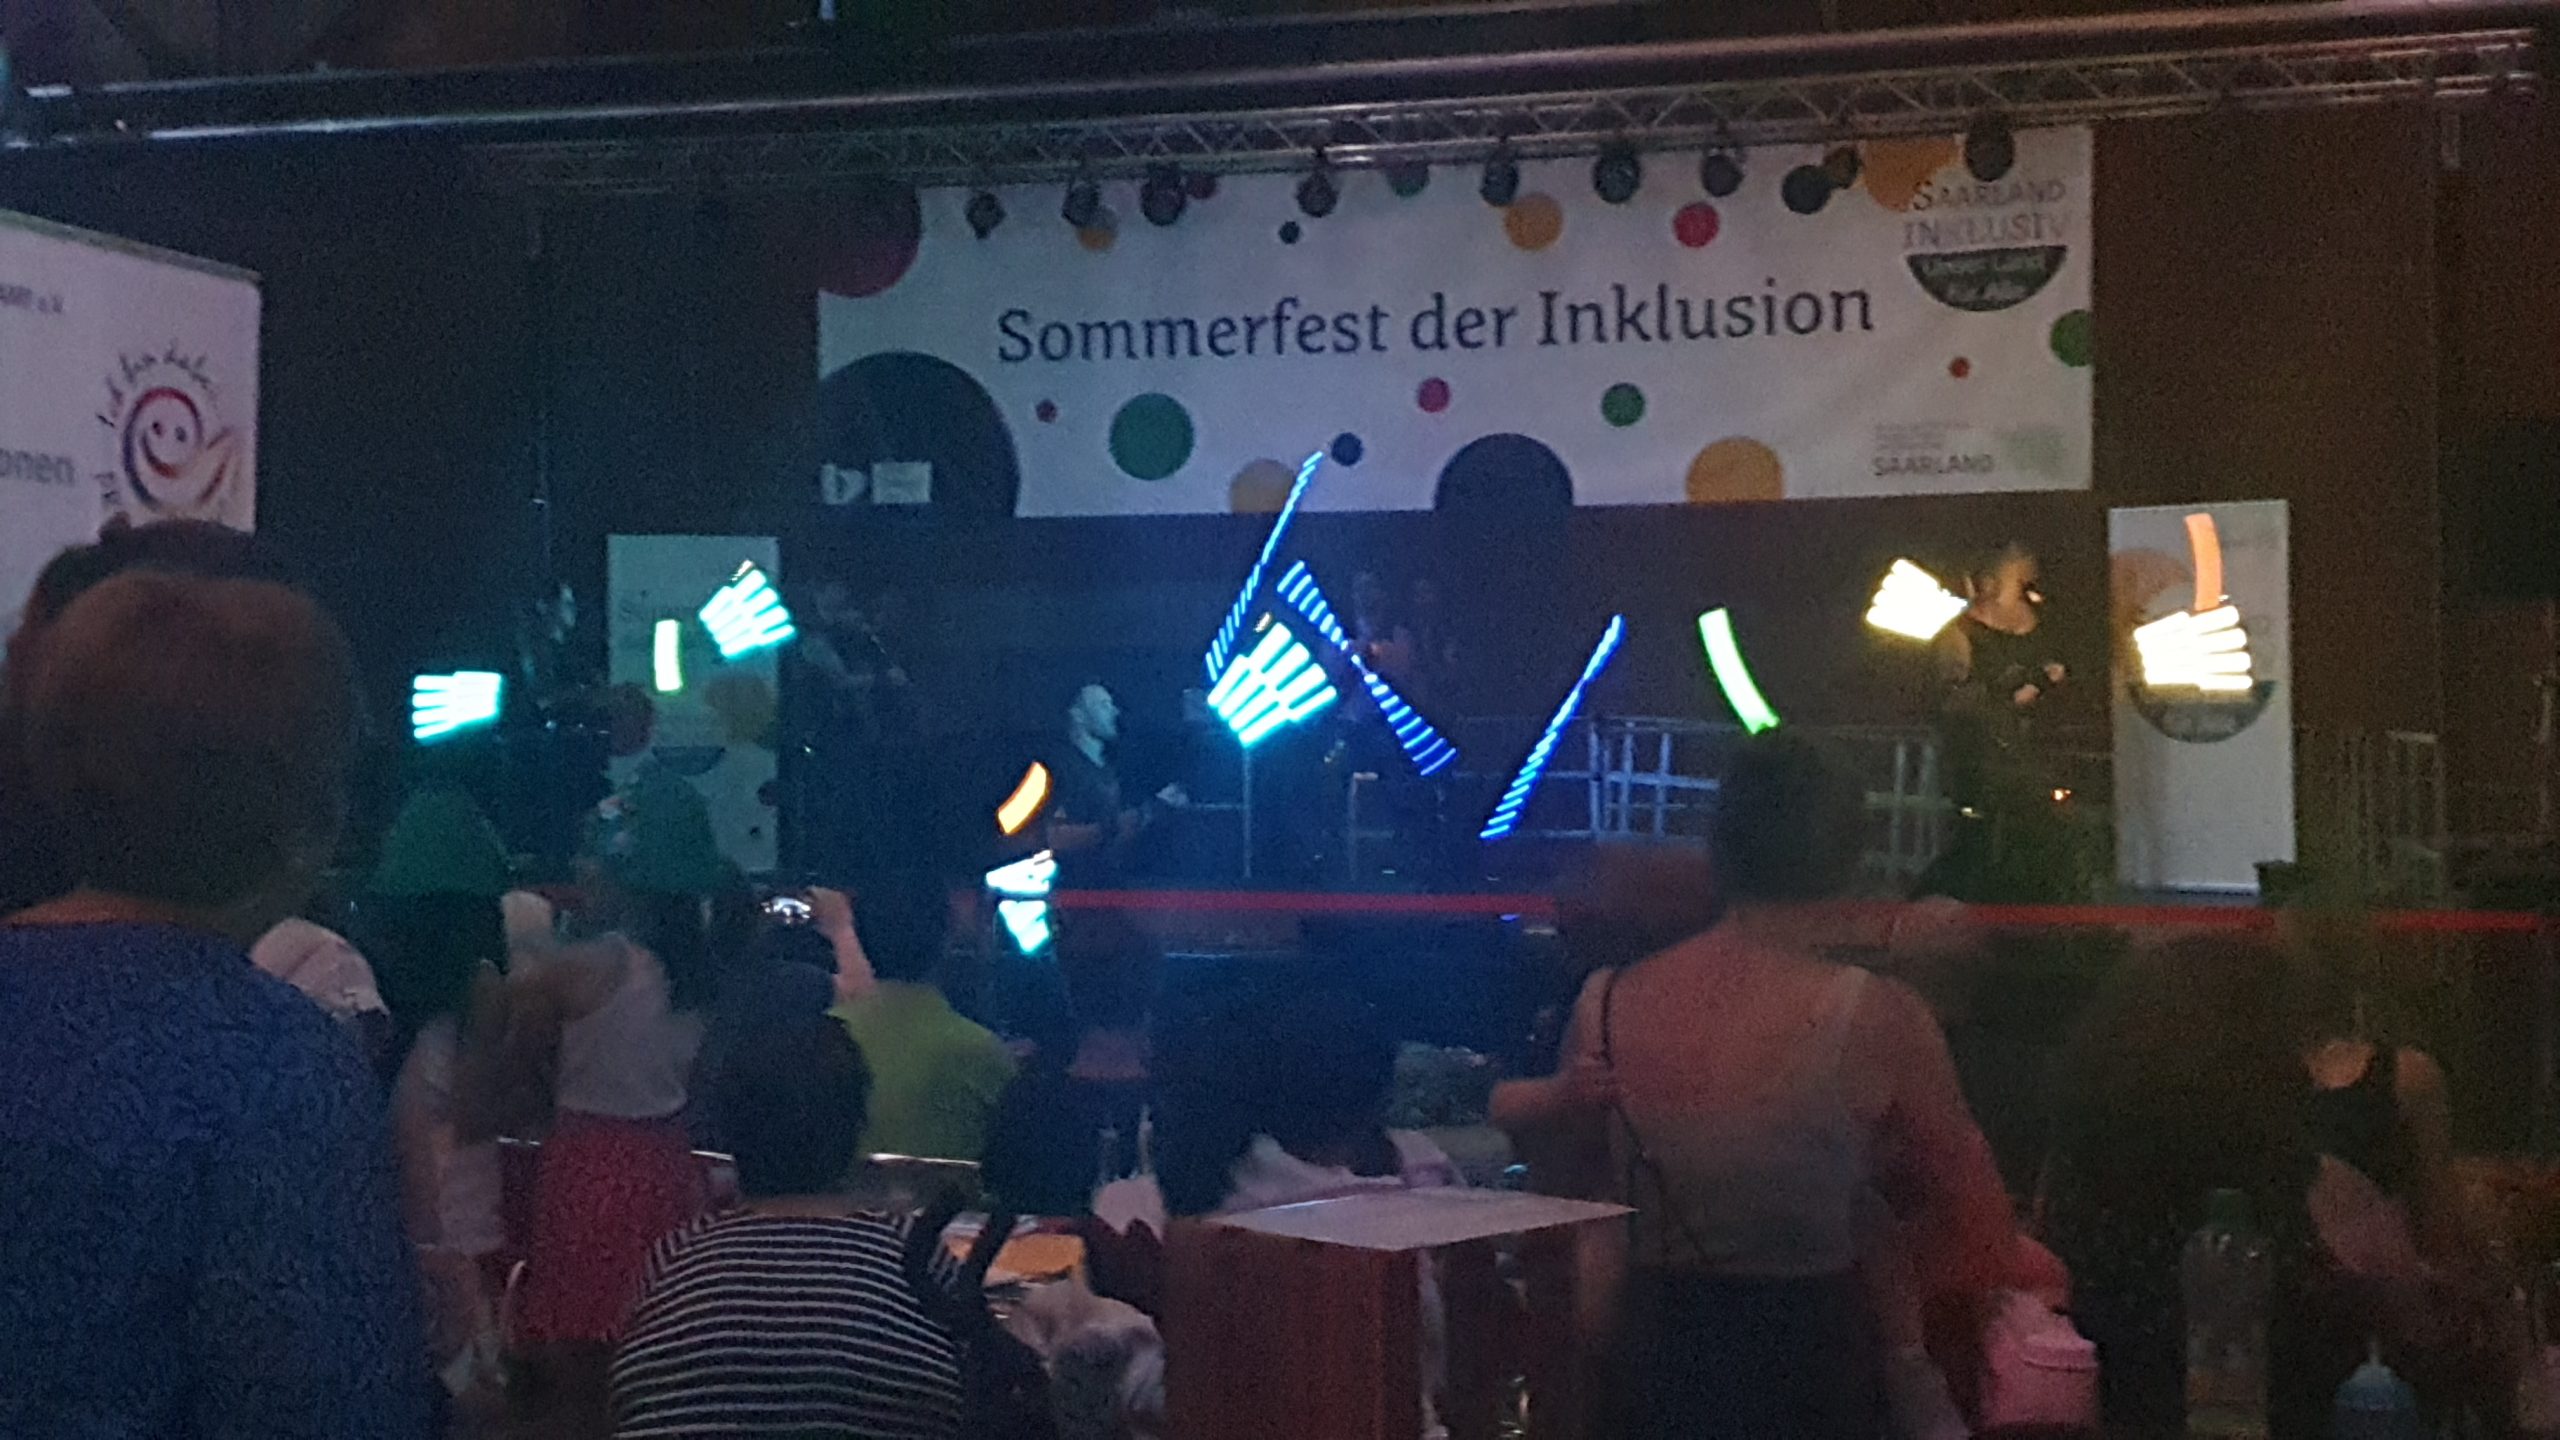 Inklusionsfest in Dillingen